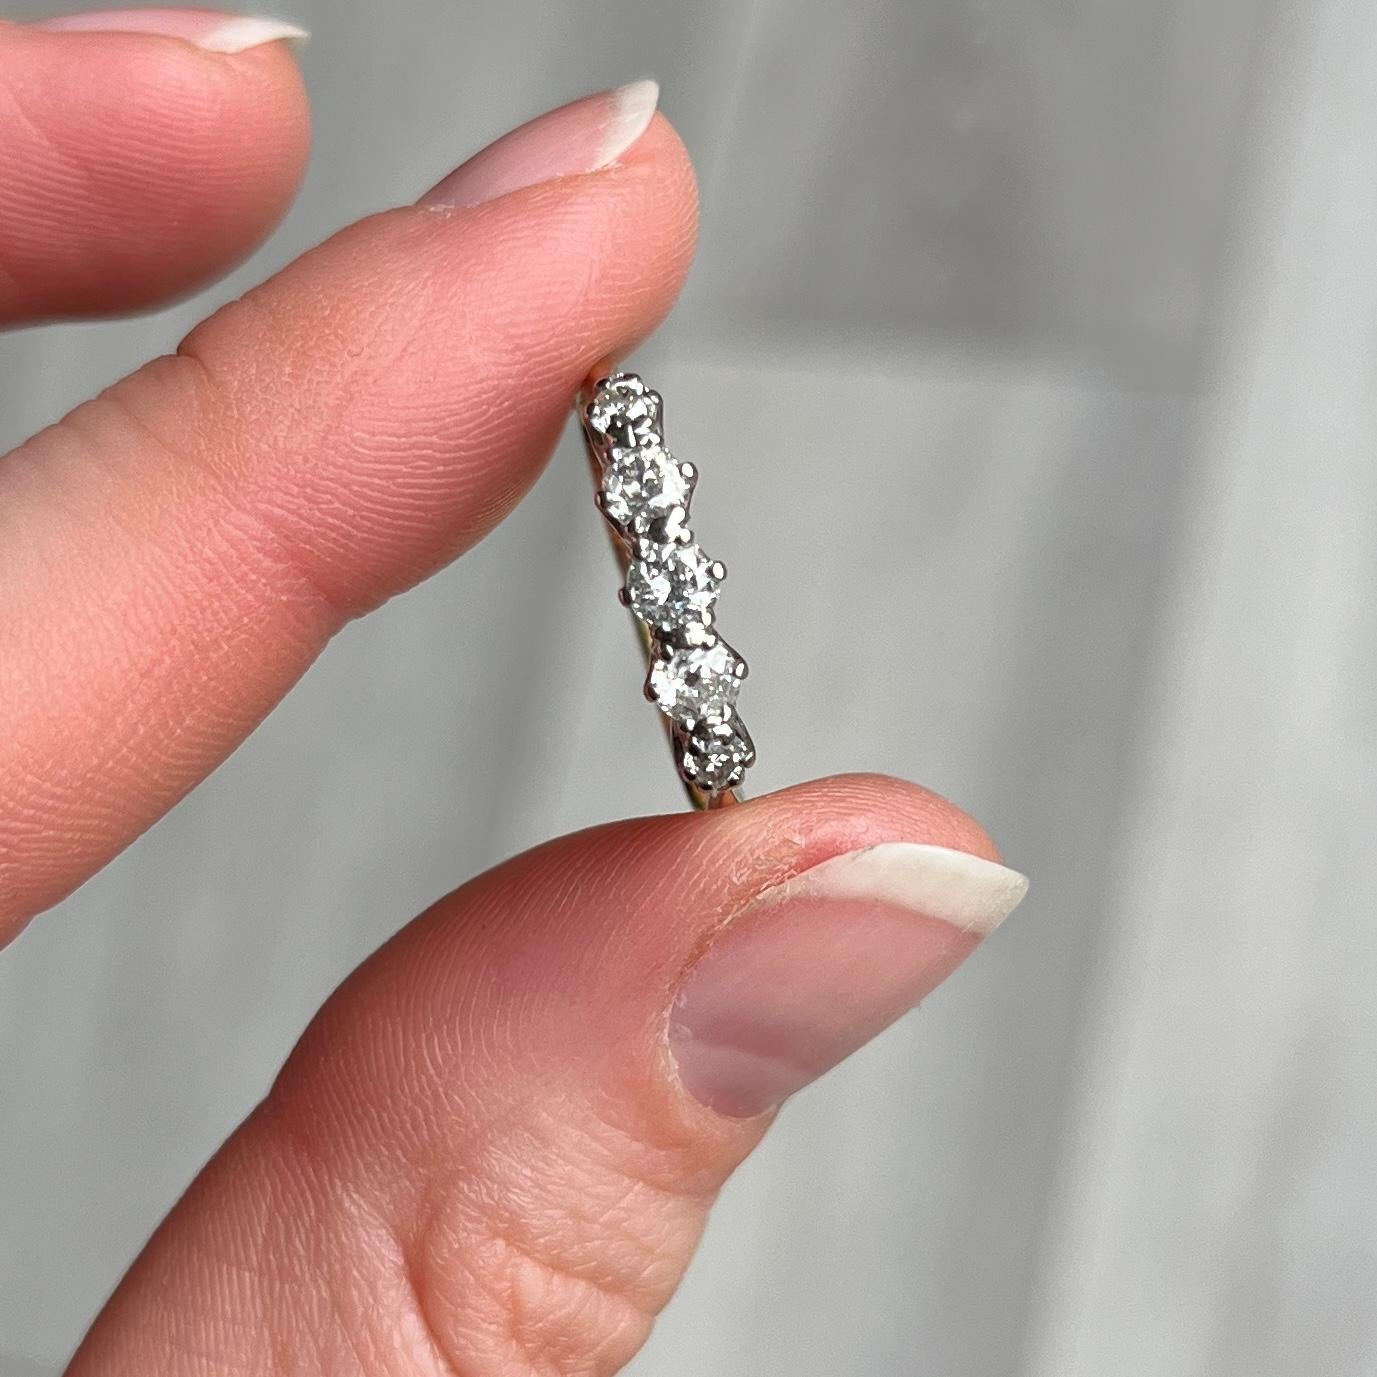 Klassischer abgestufter Diamantring mit fünf Steinen aus 18-karätigem Gold. Die Diamanten sind insgesamt ca. 45 pt und in Platin gefasst. 

Ringgröße: N 1/2 oder 7 
Breite: 4 mm
Höhe ab Finger: 6mm

Gewicht: 2,7 g